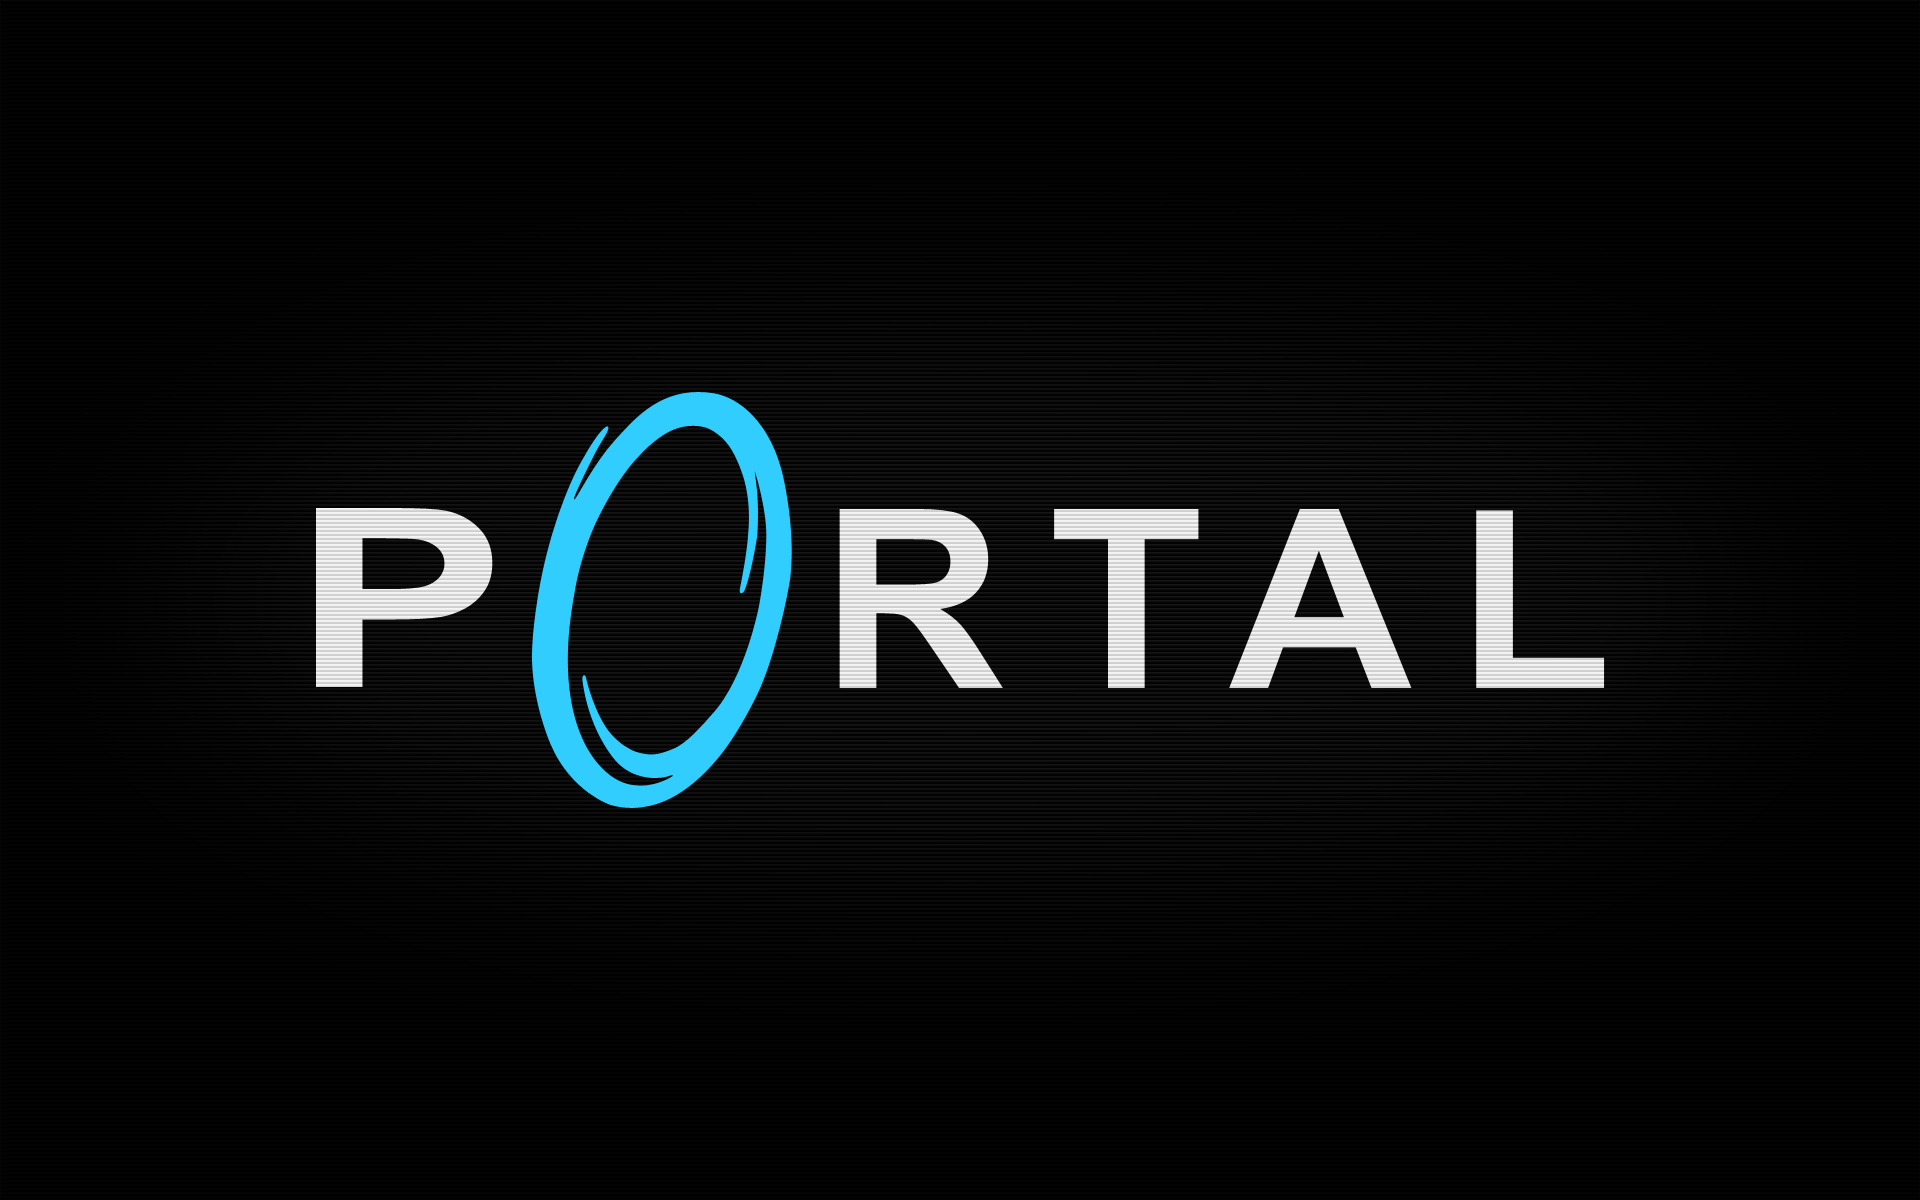 Например портал. Портал логотип. Портал игра логотип. Портал 2 логотип. Портал.